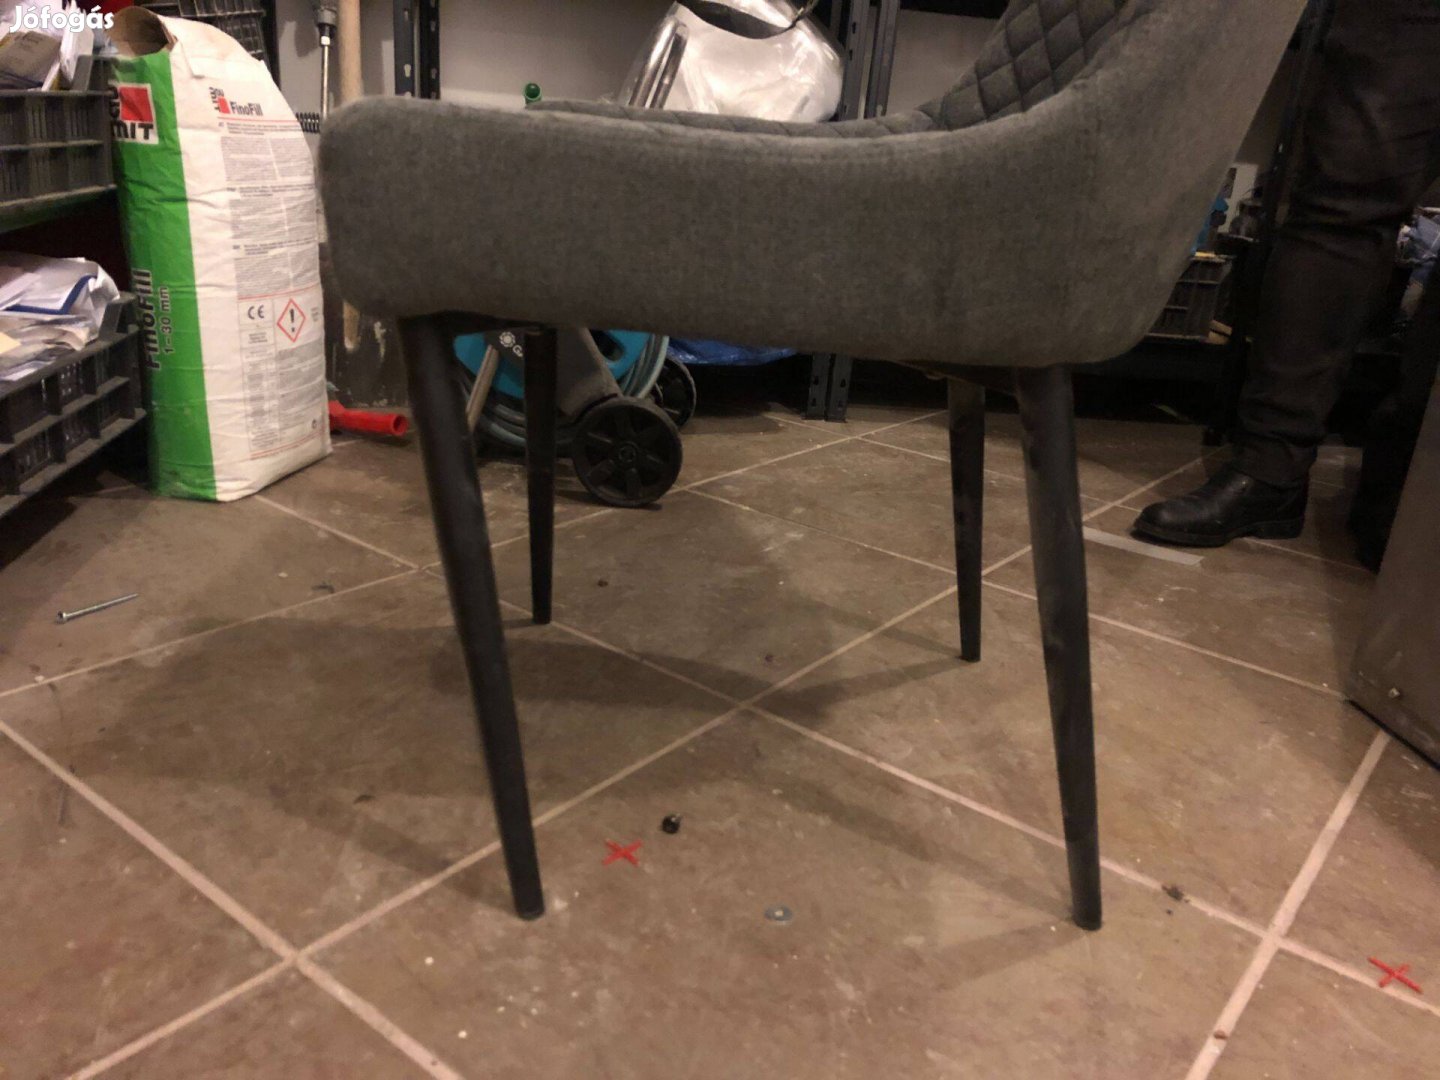 Keresek: Lakatost keresek, aki ezeket a székeket meg tudja javítani